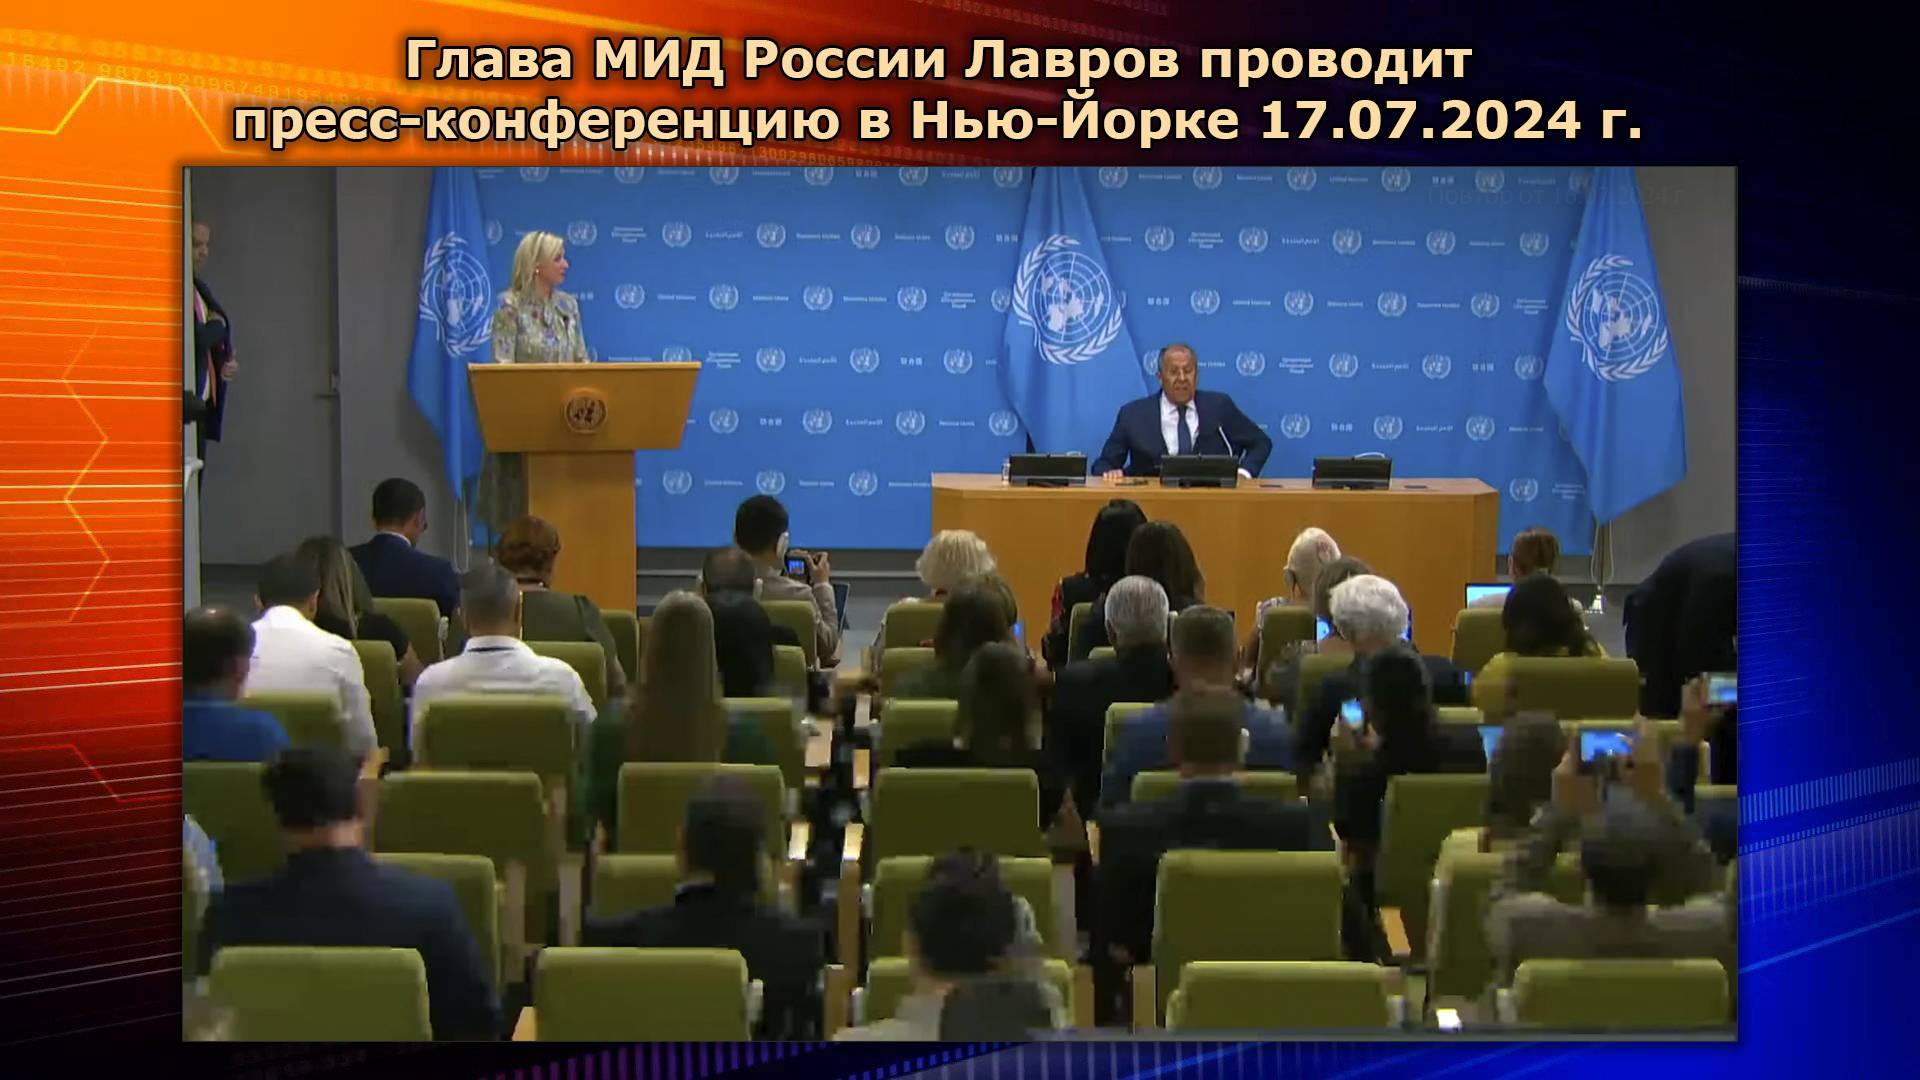 Глава МИД России Лавров проводит пресс-конференцию в Нью-Йорке HD #лавров #мид #прессконференция